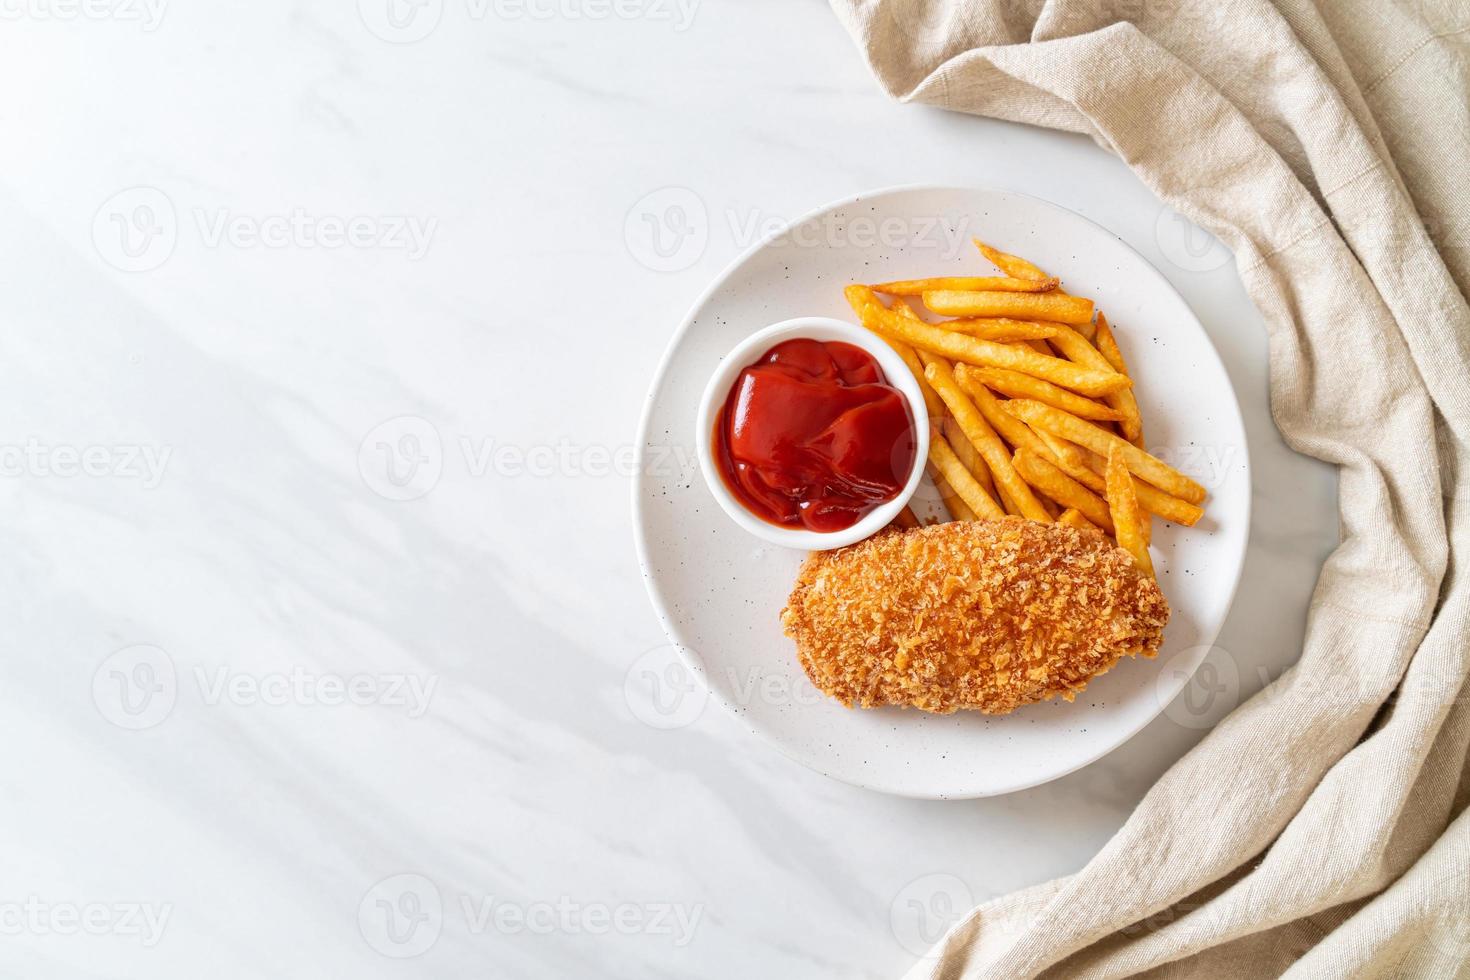 Filé de peito de frango frito com batata frita e ketchup foto